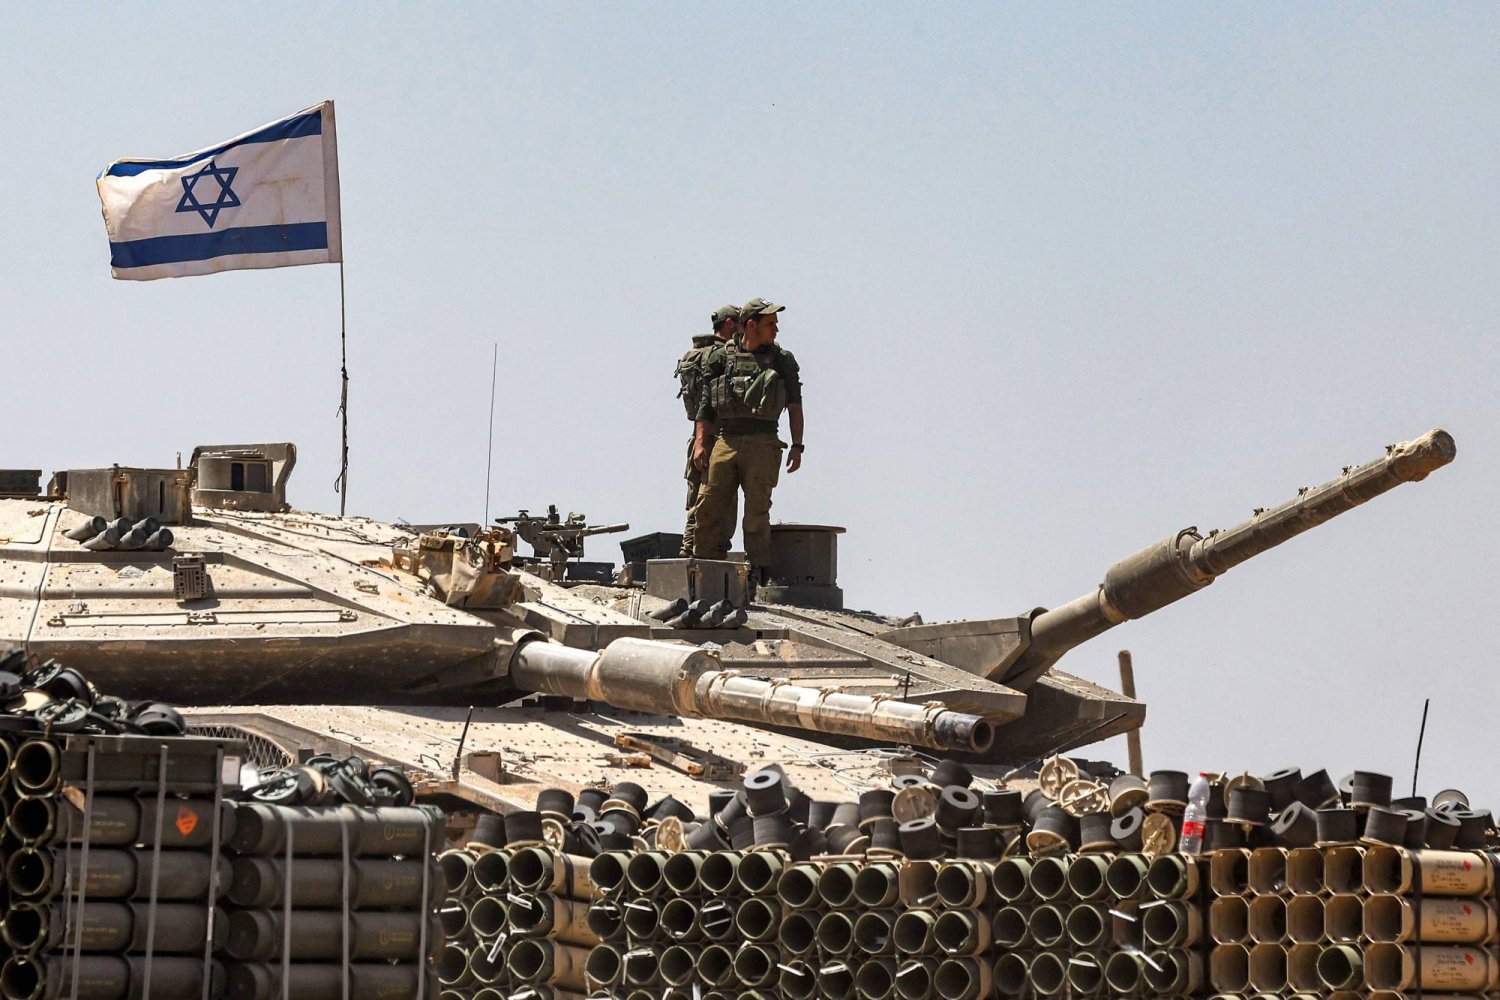 جنود من الجيش الإسرائيلي يقفون فوق برج دبابة متمركزة في جنوب إسرائيل بالقرب من الحدود مع قطاع غزة (أ.ف.ب)